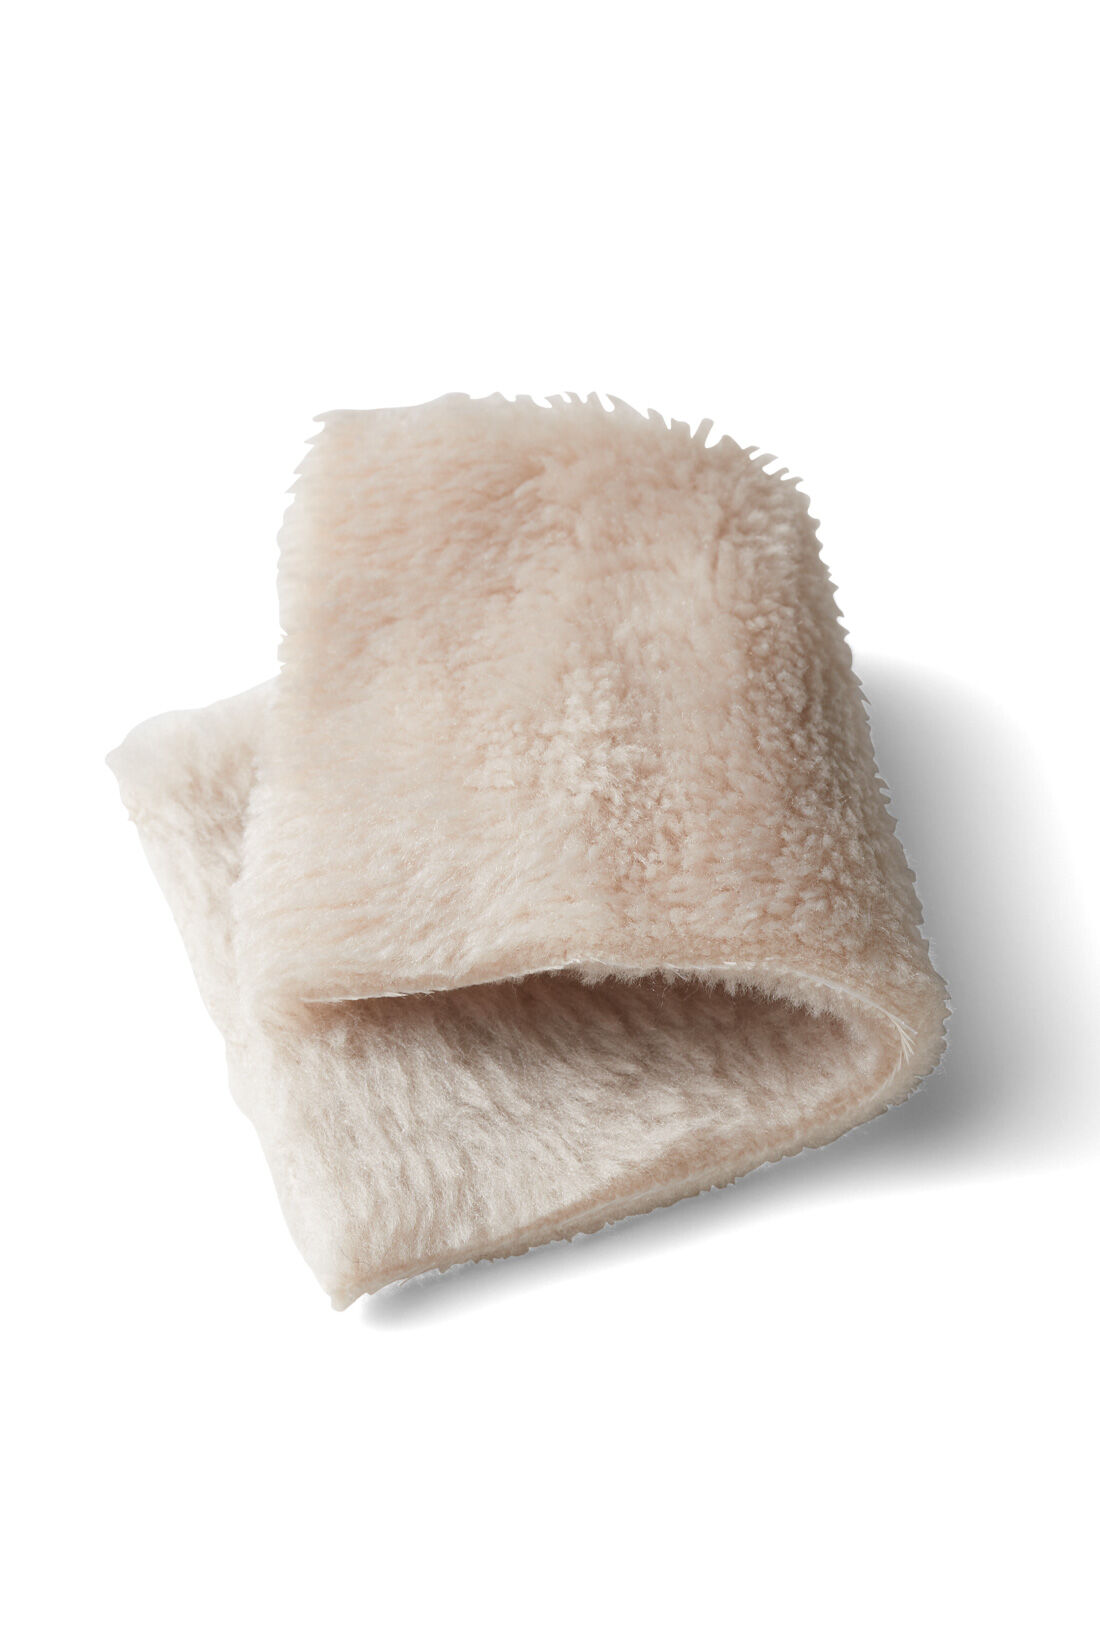 Live in  comfort|リブ イン コンフォート おうちの節電対策にもぴったり 全身包まれる両面起毛ワンピース〈ベージュ〉|ボアのようなふわもこ感に上質さをプラスしたマイクロファイバーフランネル素材。繊維と繊維の隙間に空気が溜まり暖かさを保ちます。